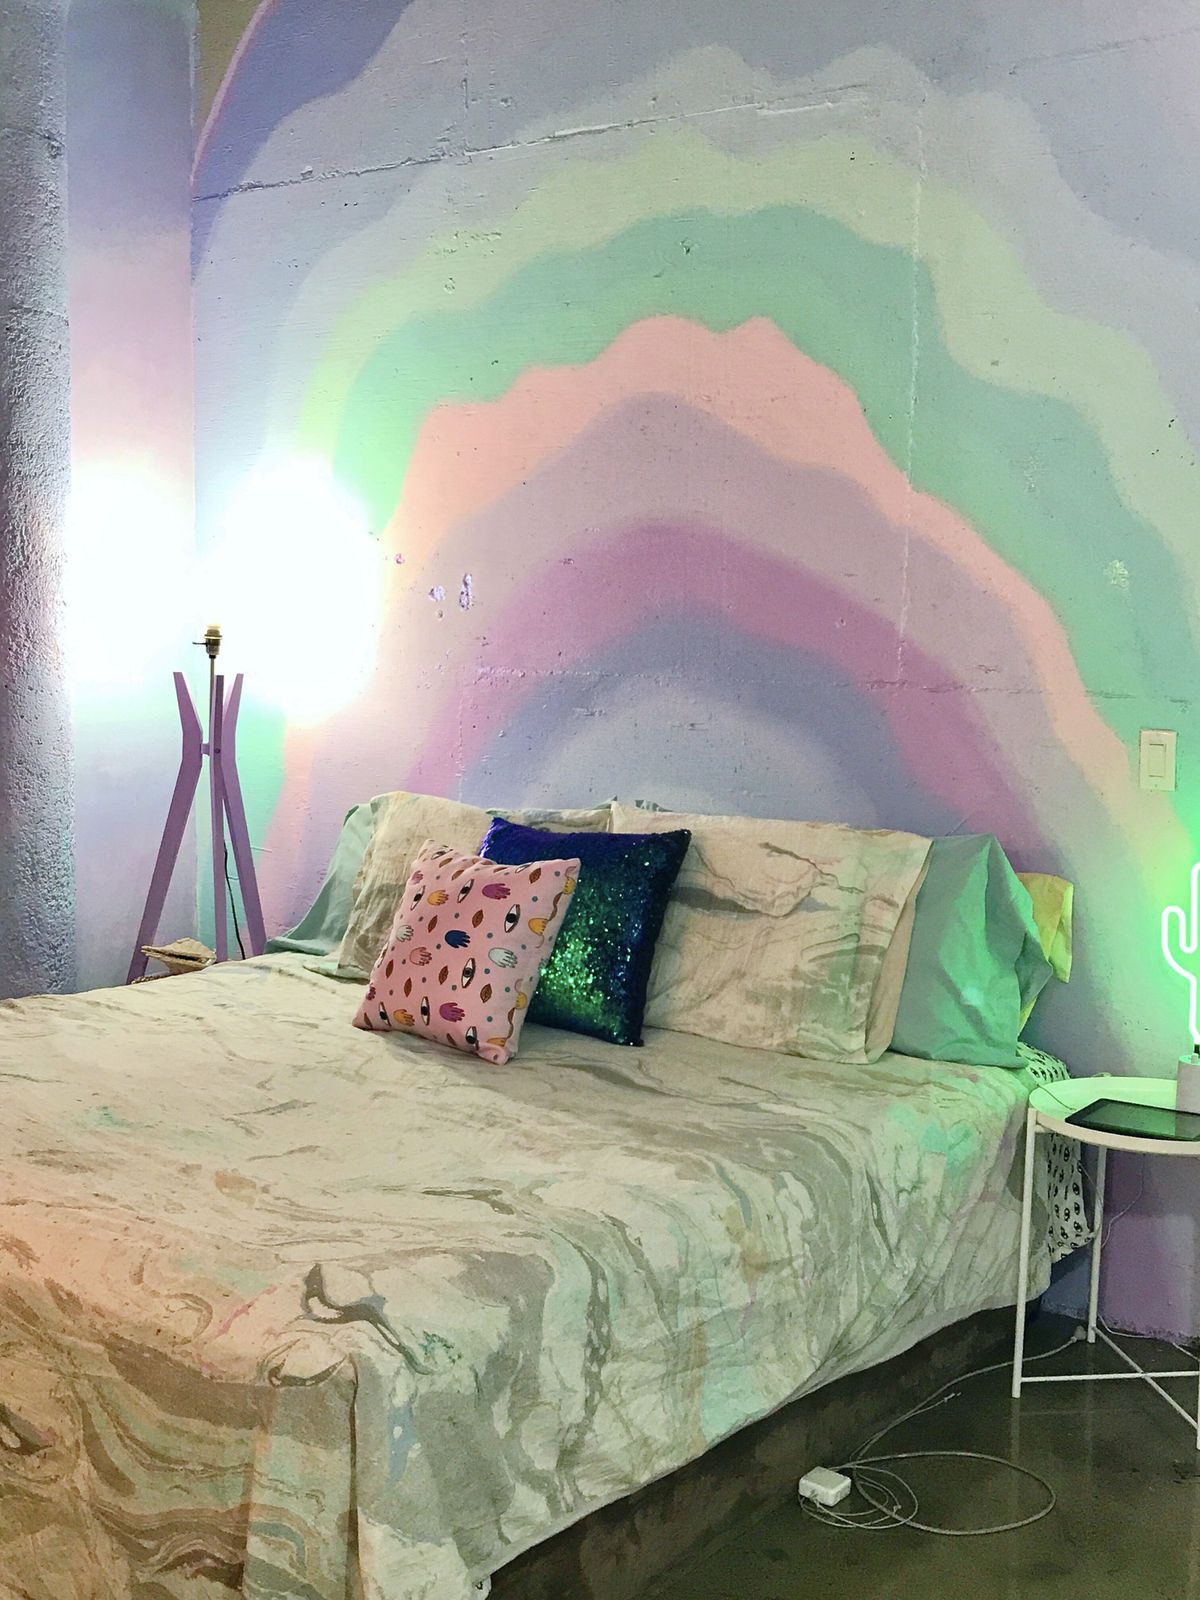 Lấy cầu vồng làm ý tưởng trang trí nhà, căn hộ nhỏ 35m² của cô gái trẻ đang gây sốt trên Instagram - Ảnh 12.